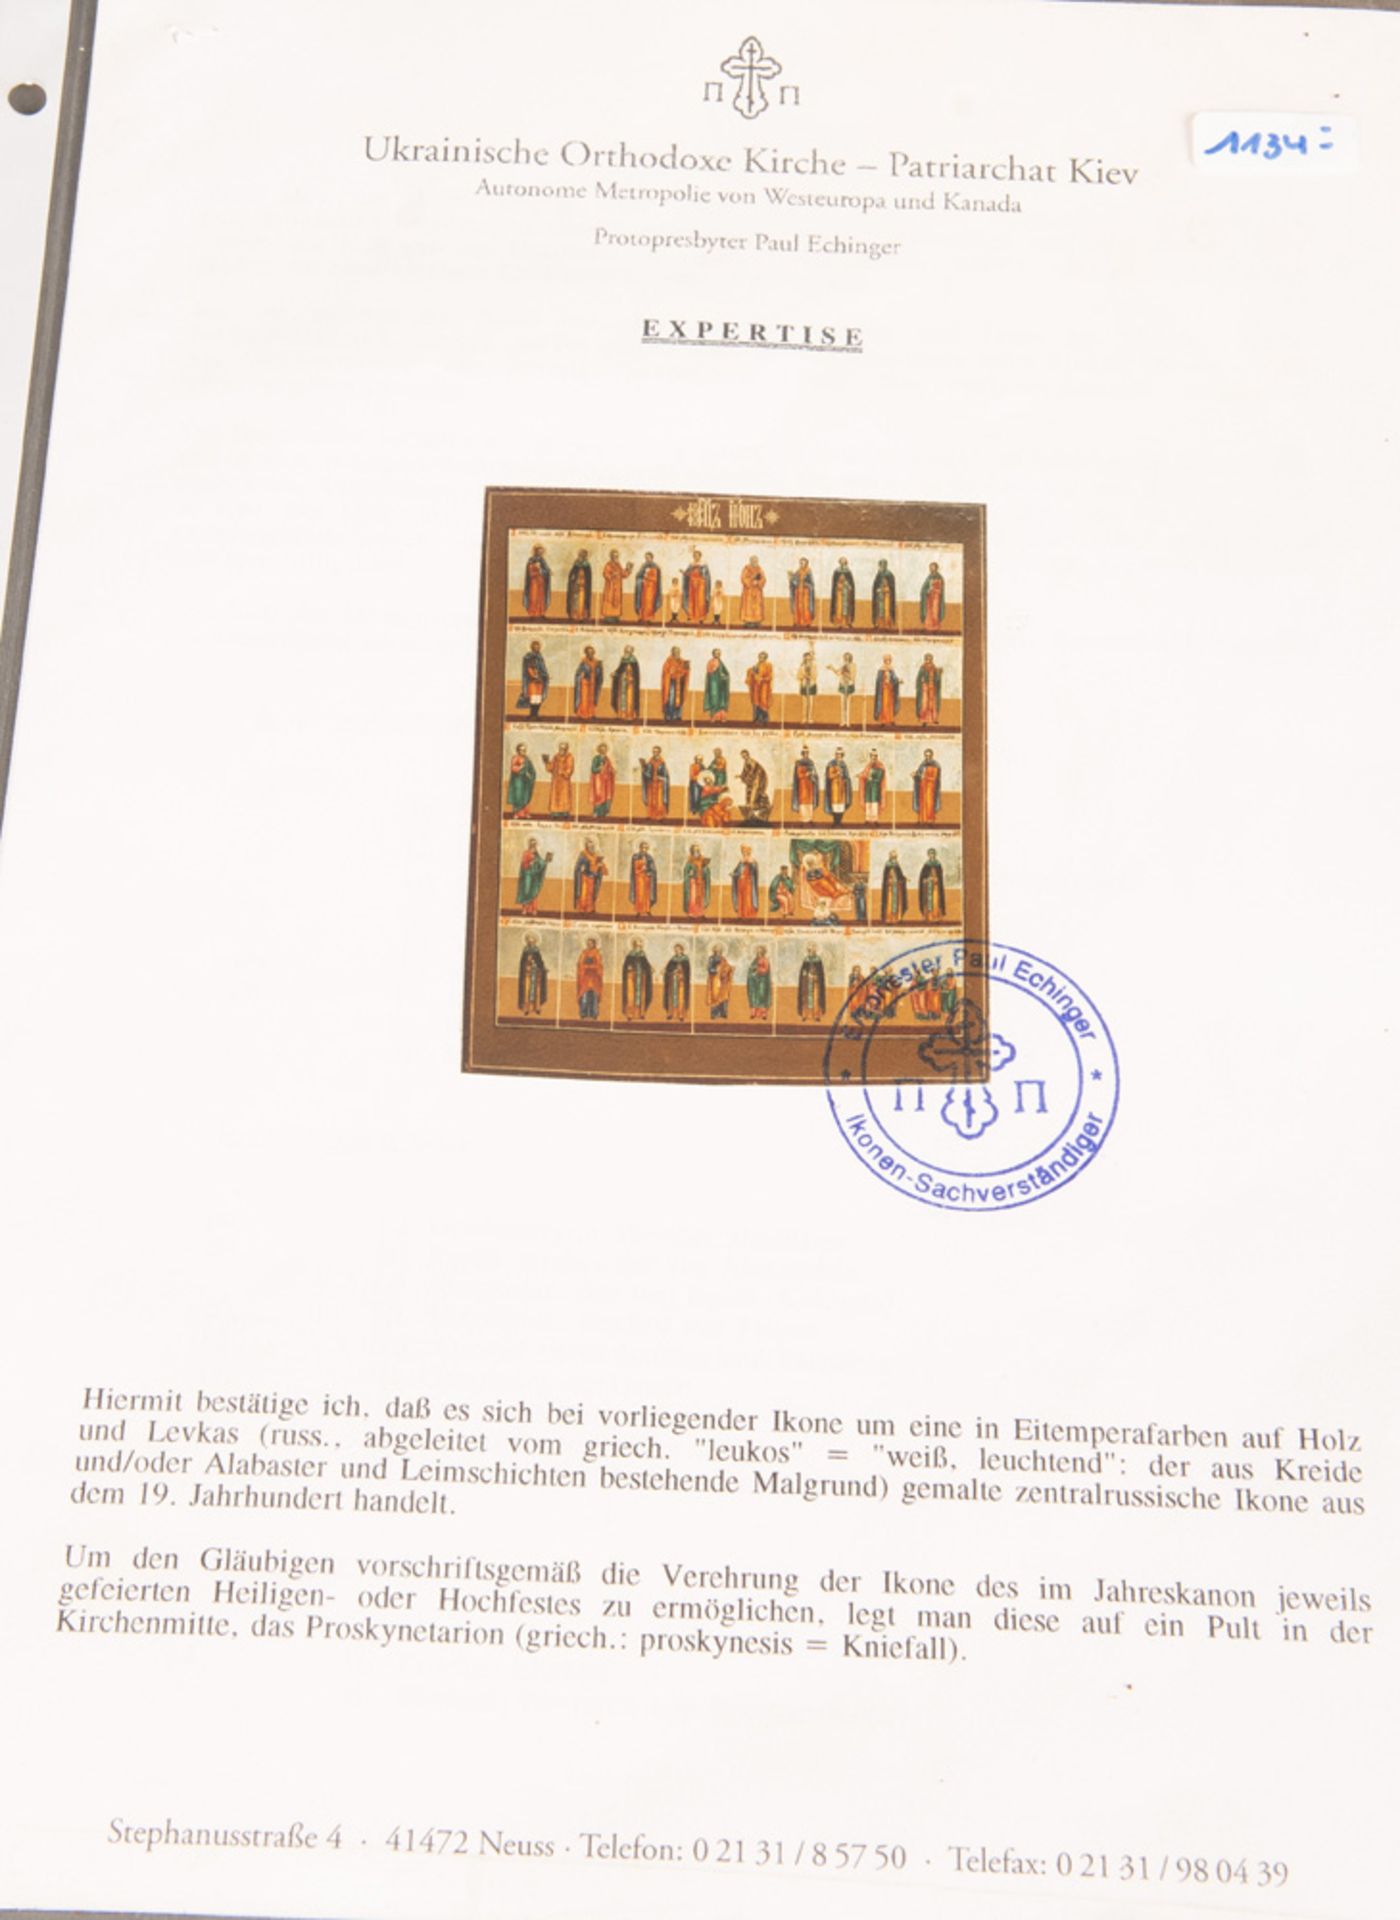 Monatsikone. Russland 19. Jh. Öl/Holz, 33,5 x 27 cm. Mit ausführlicher Expertise von Paul Echinger - Bild 2 aus 4